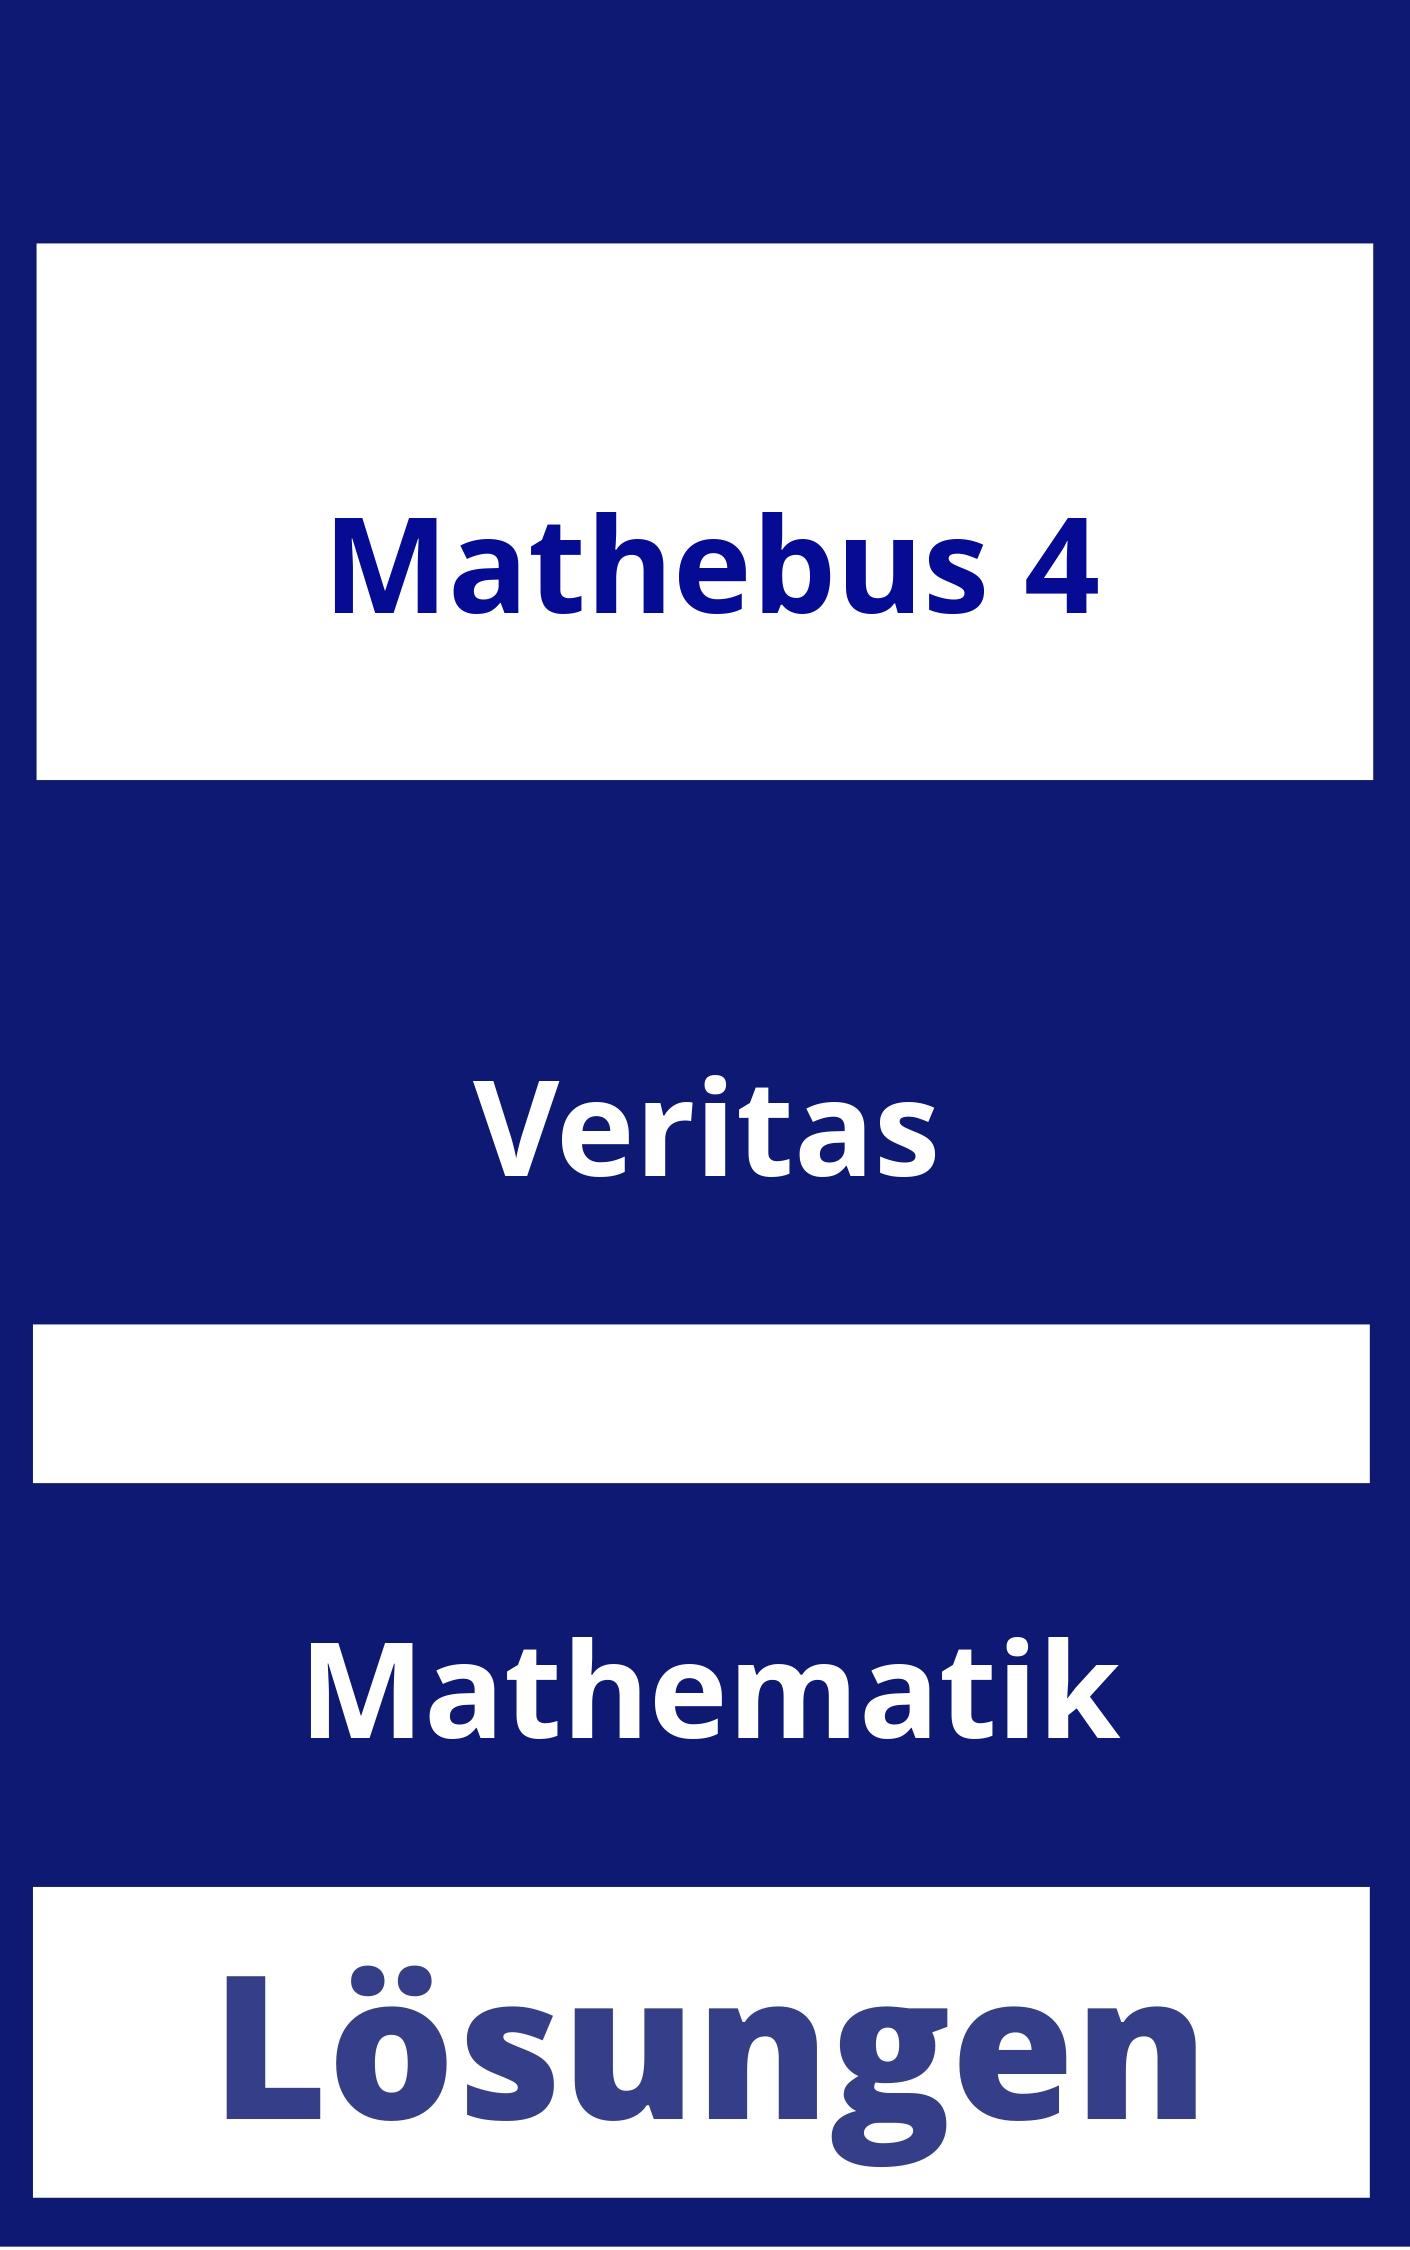 Mathebus 4 Lösungen PDF